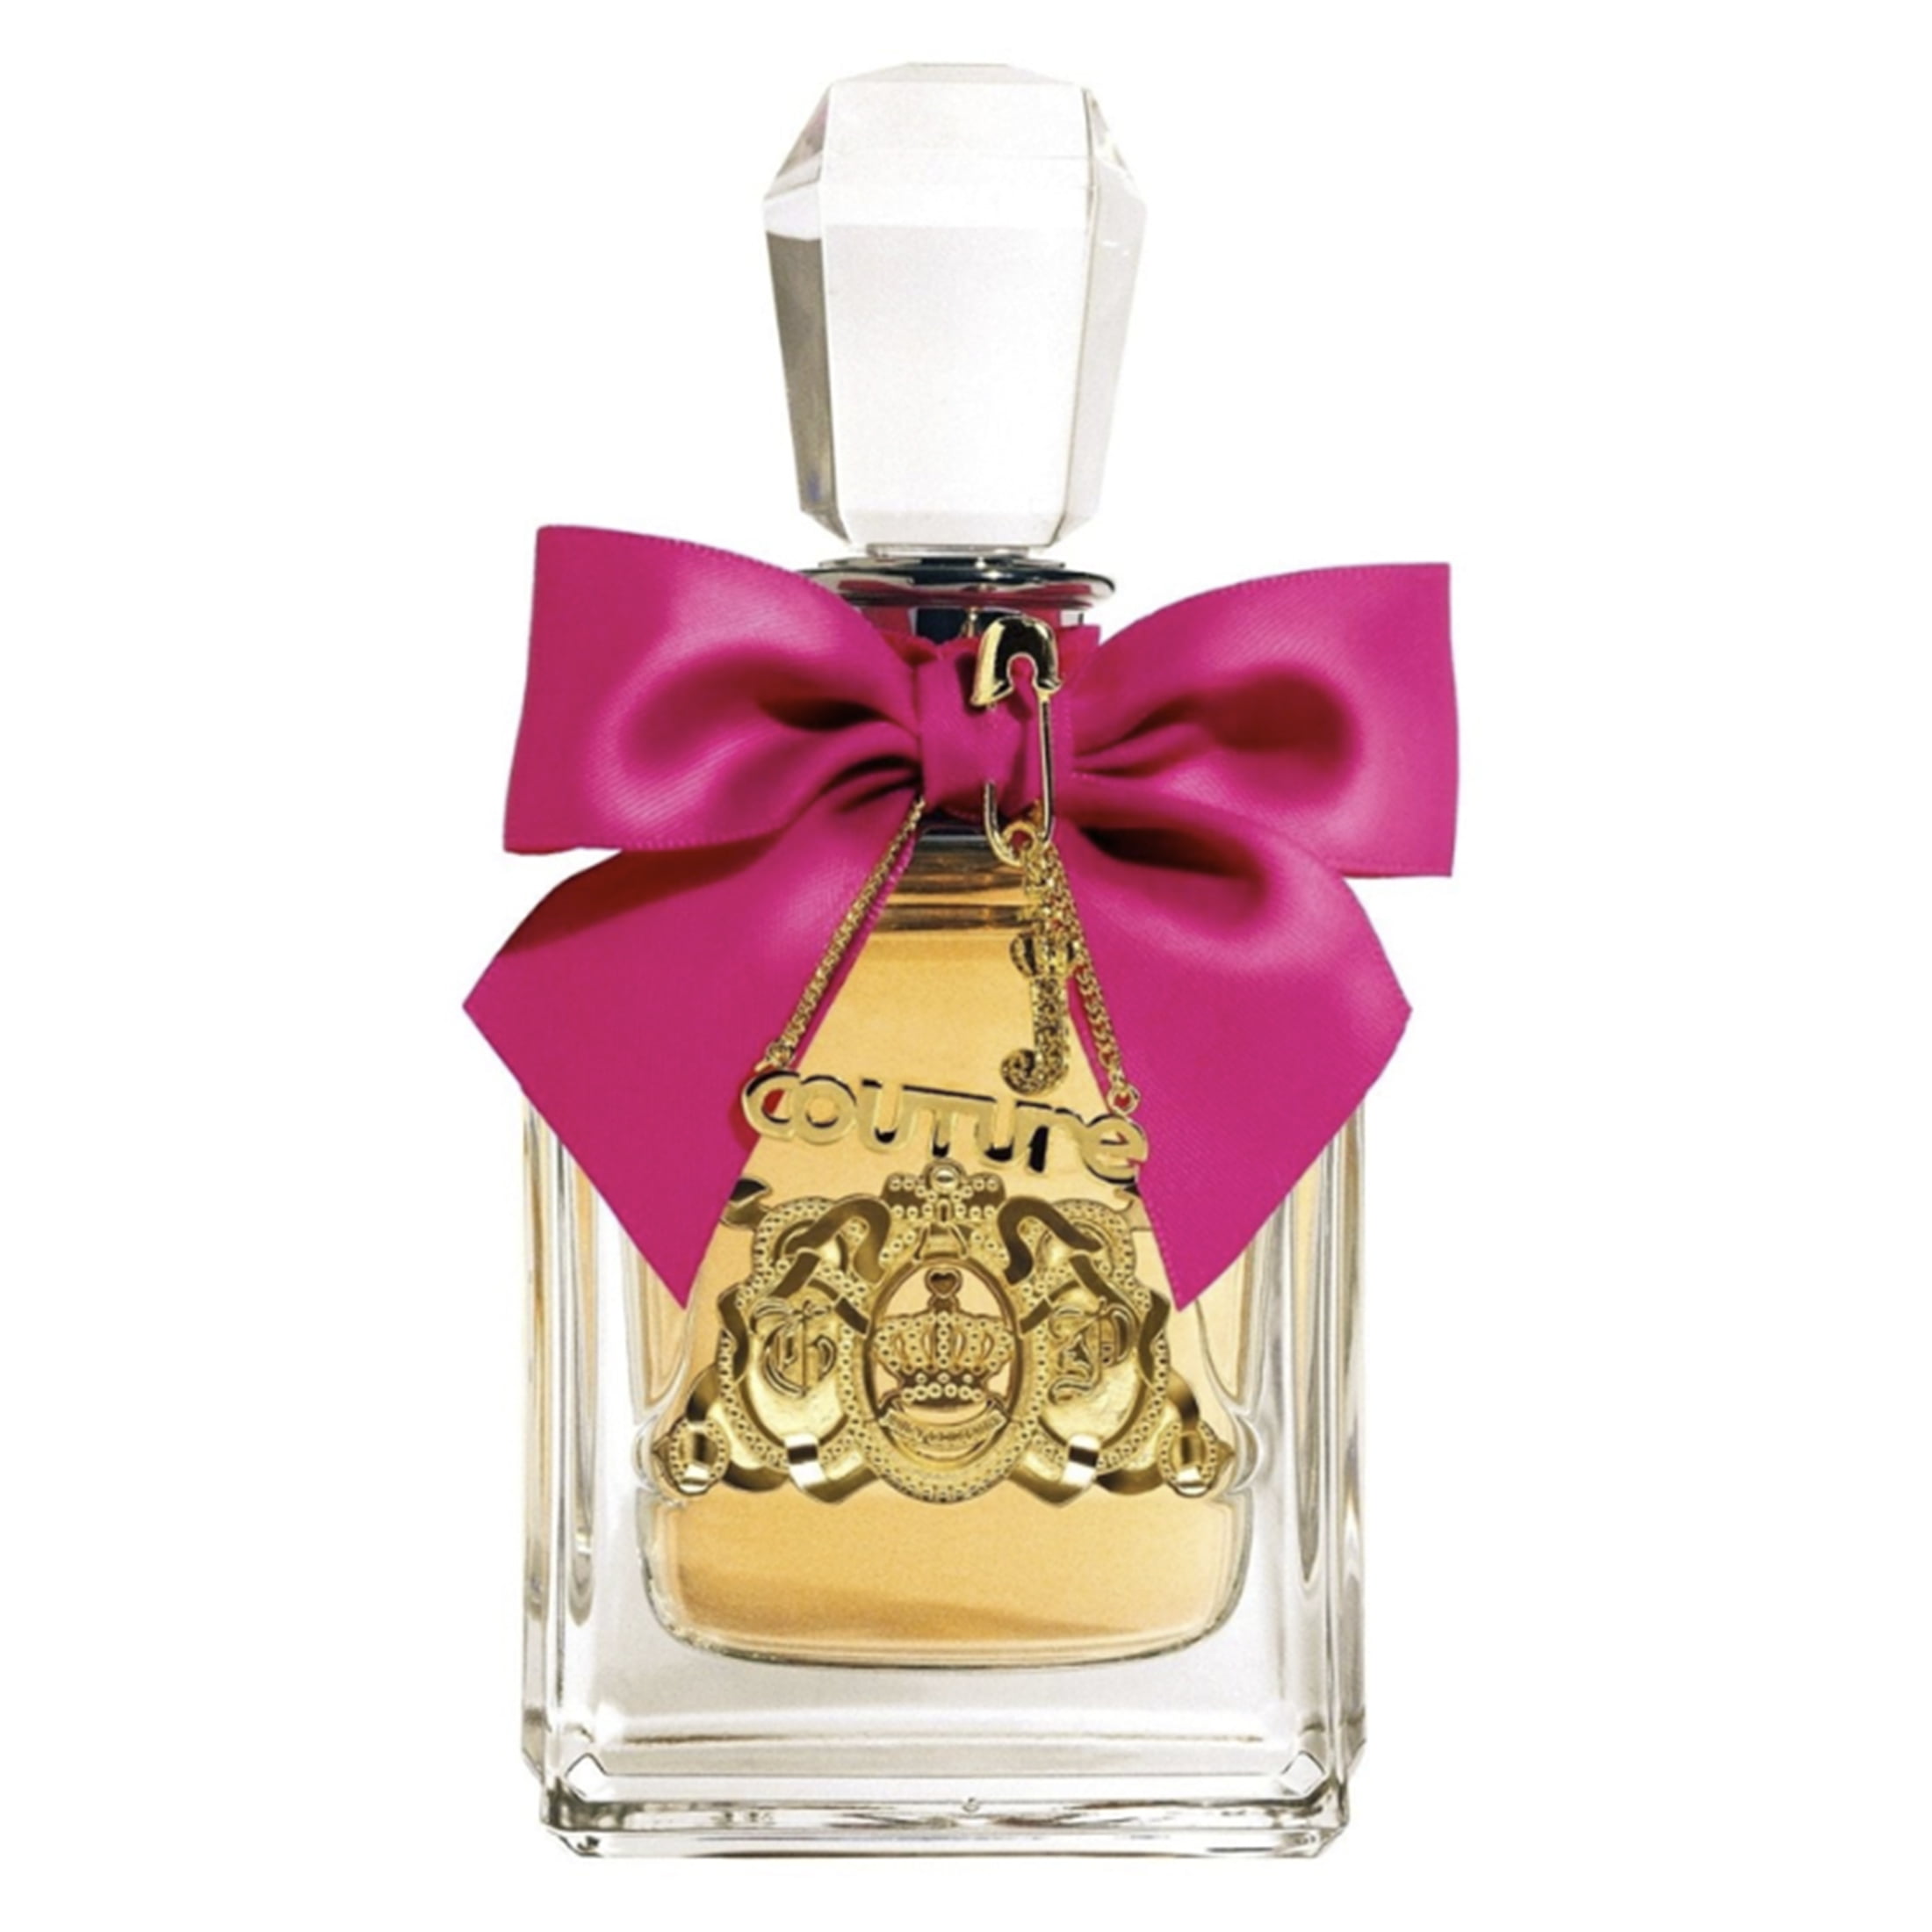 Juicy Couture Viva La Juicy Eau de Parfum, Perfume for Women, 3.4 Oz Full Size